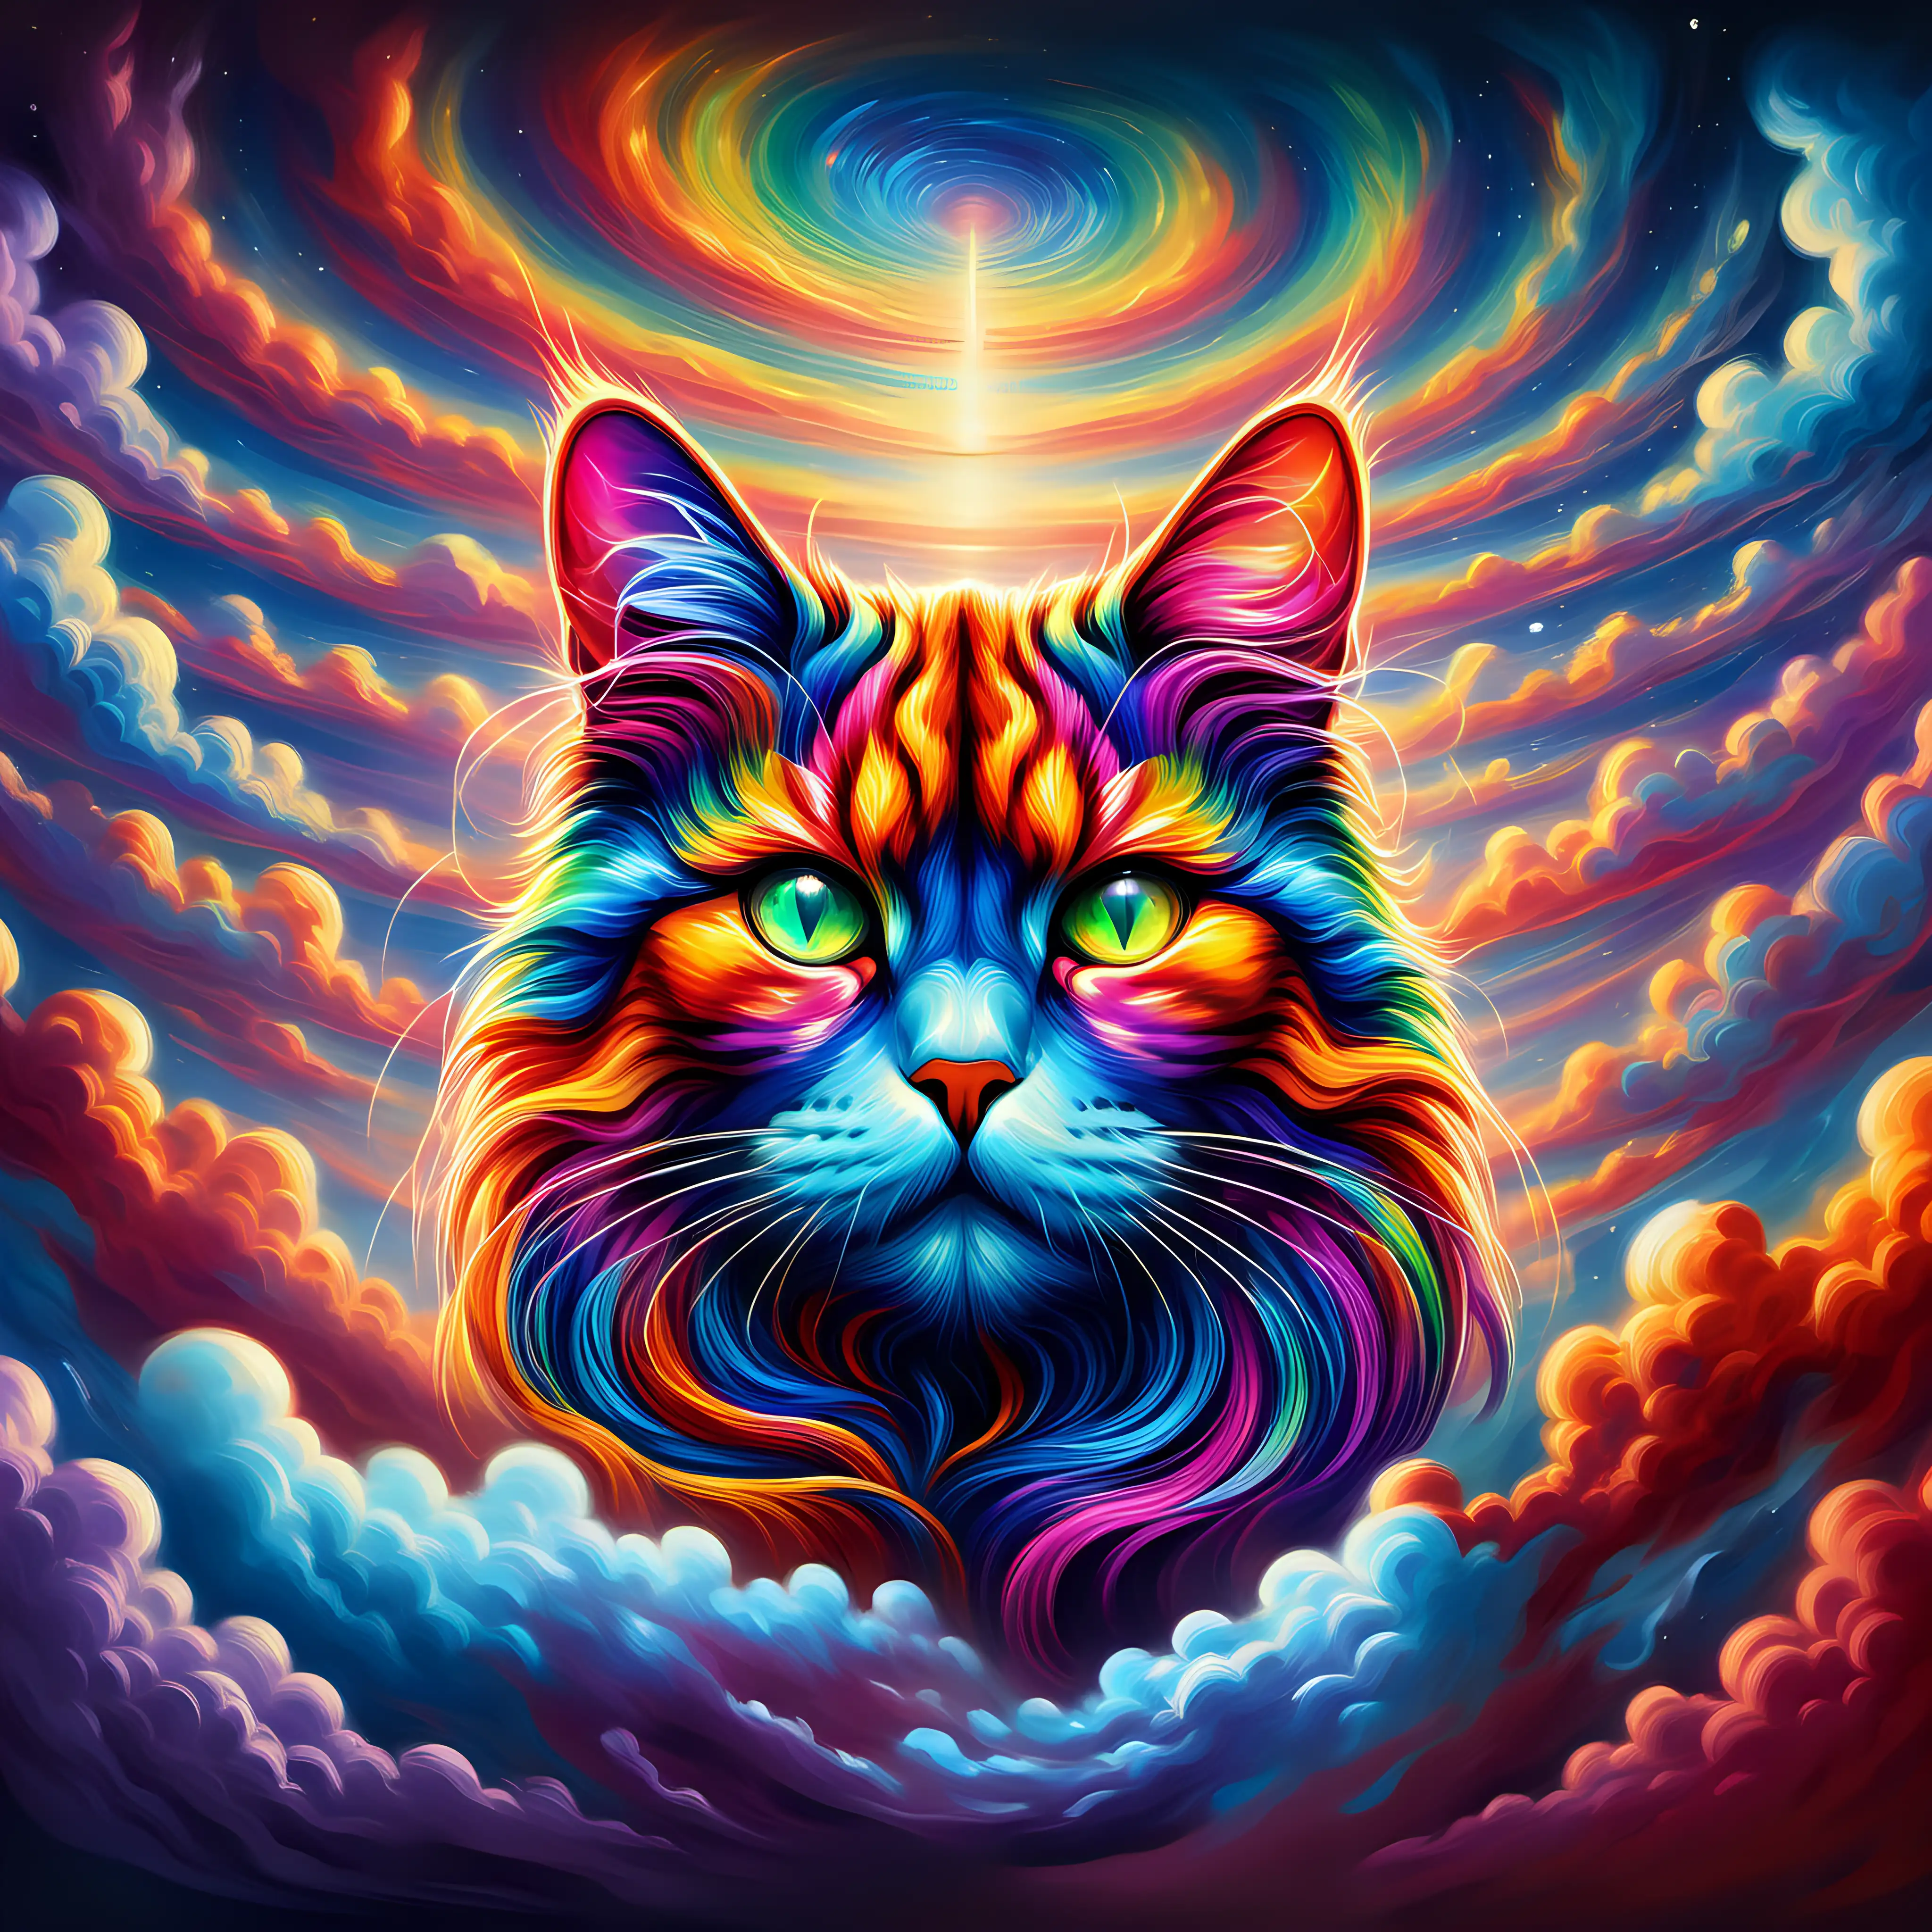 Majestic Multicolored Cat Head in Swirling Sky